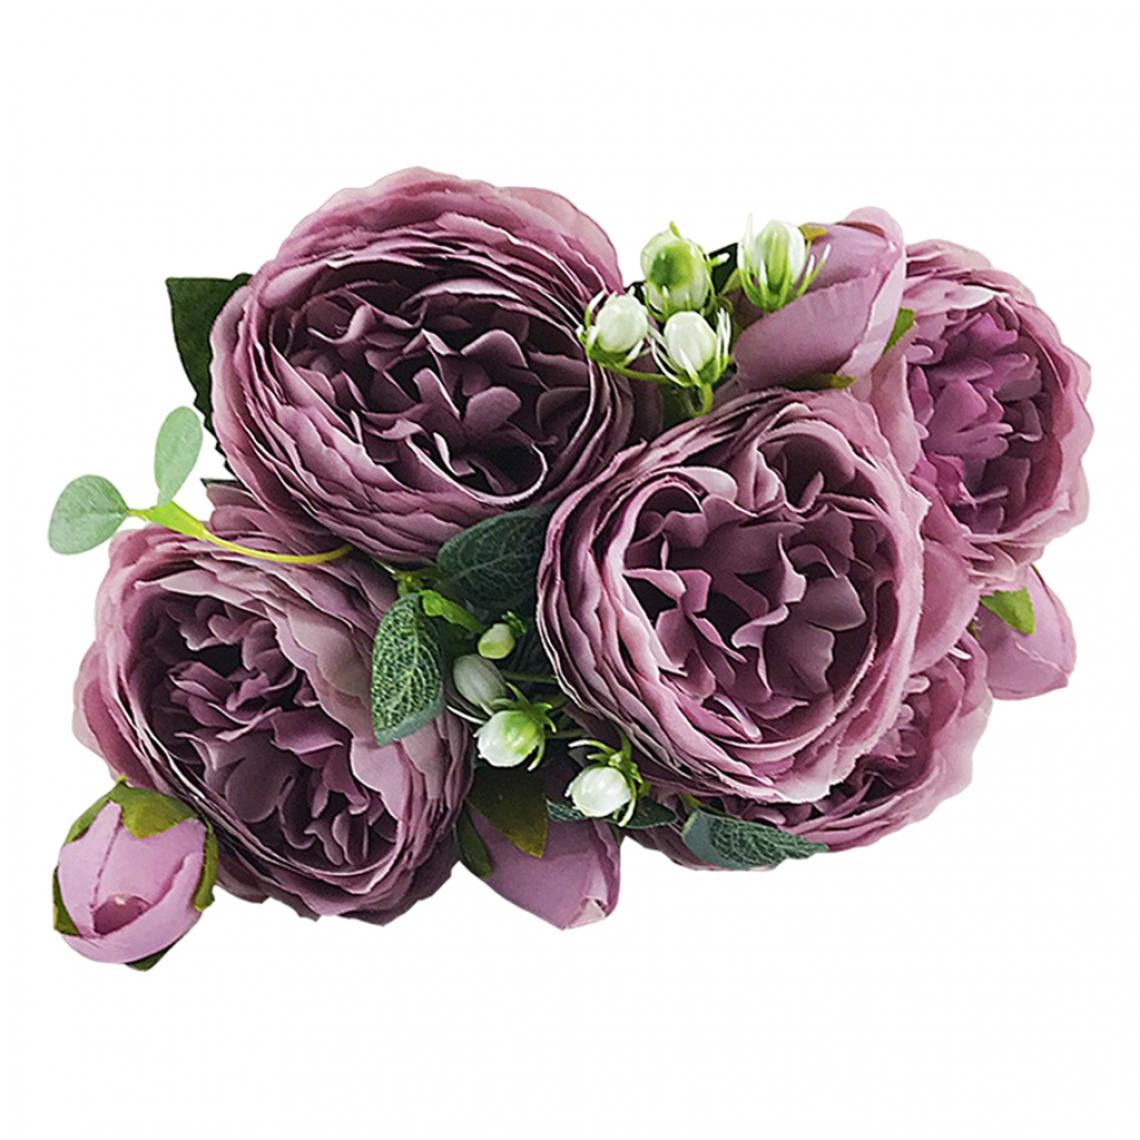 marque generique - Faux Persian Rose 5 Fleurs Bouquet De Soie Décoration De Fête Embellissement Bleu - Plantes et fleurs artificielles